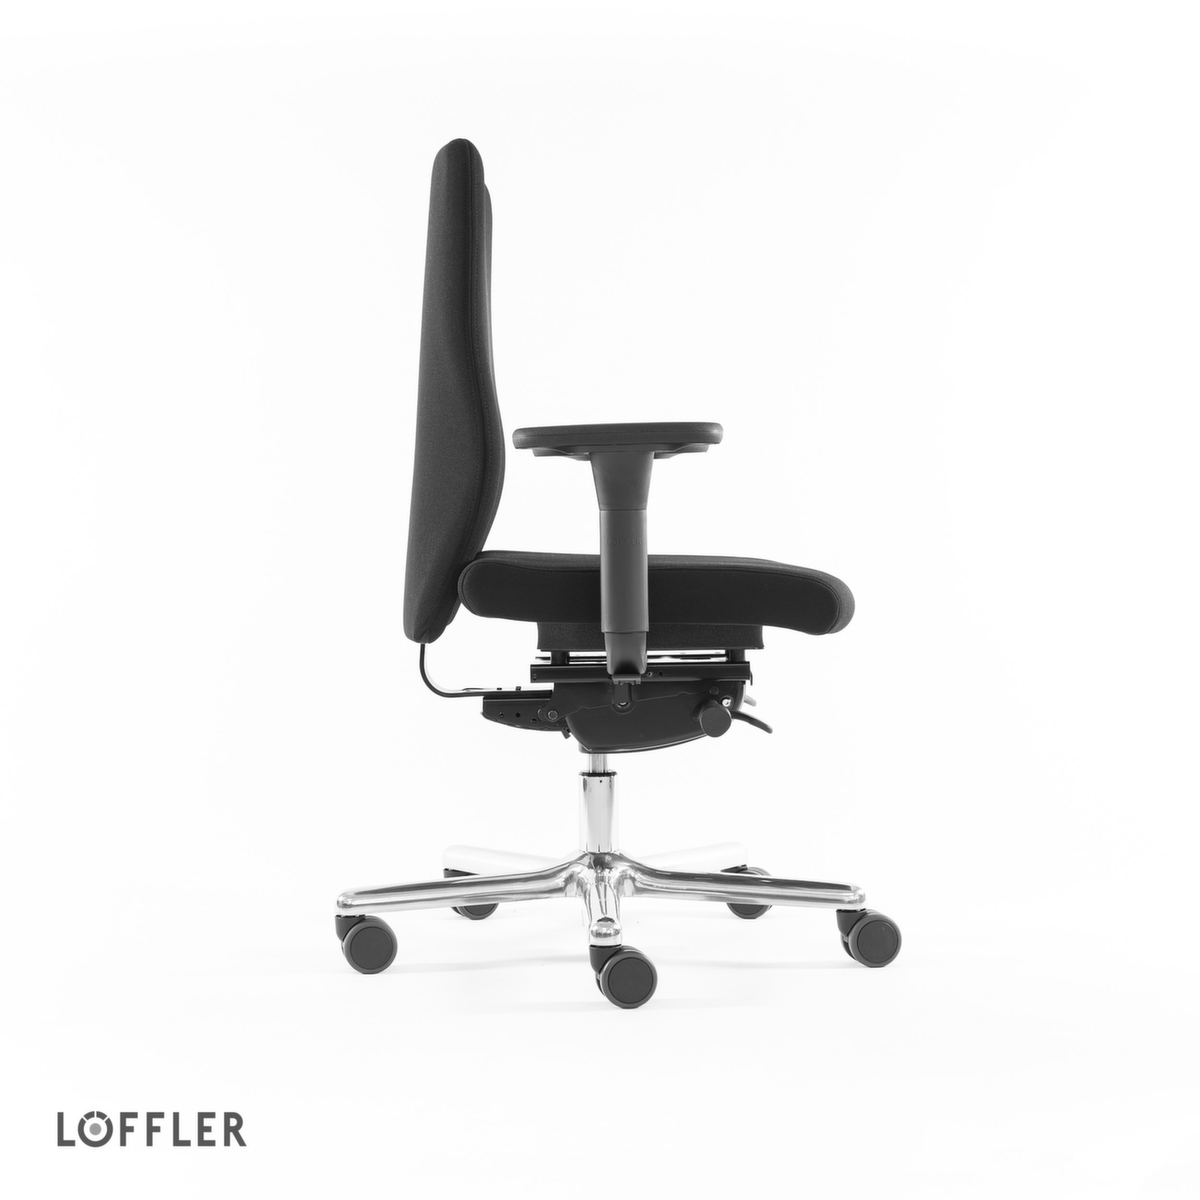 Löffler Bürodrehstuhl mit viskoelastischem Sitz, schwarz Standard 3 ZOOM